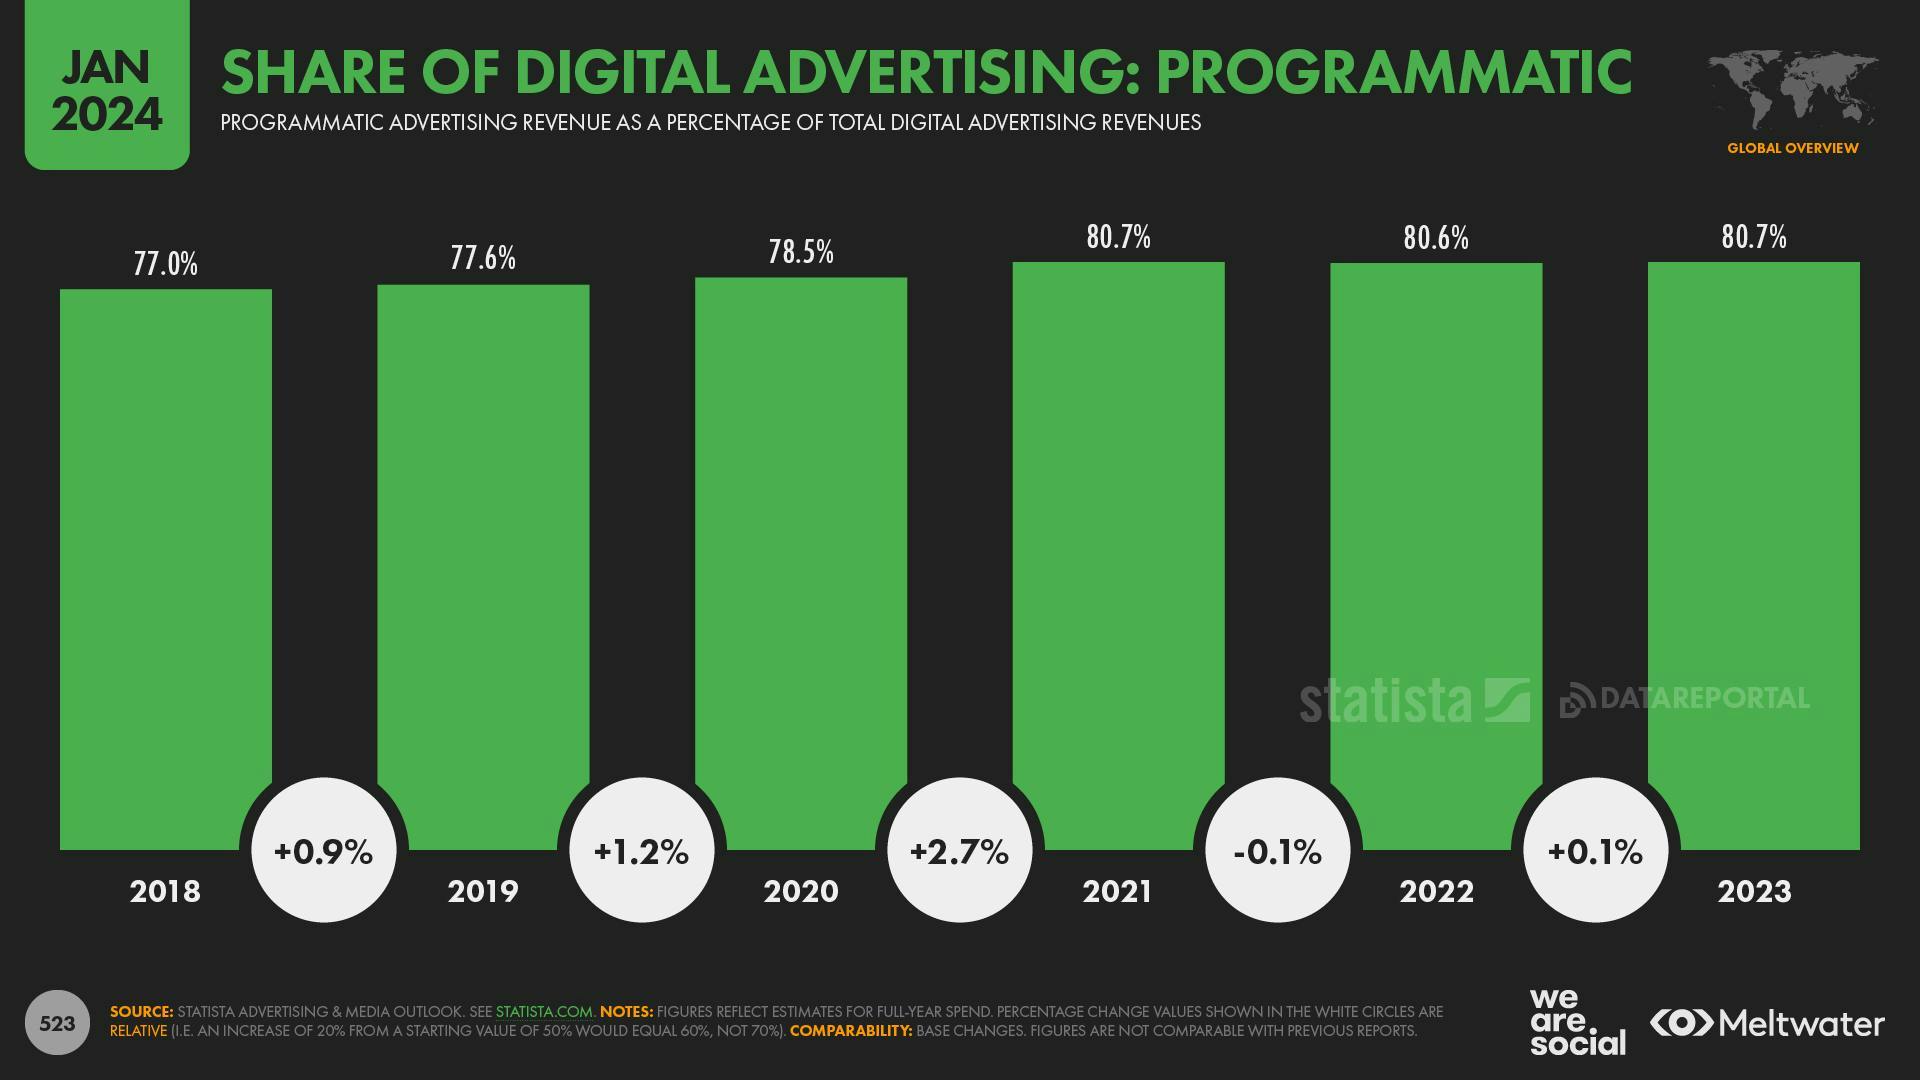 Share of digital advertising: Programmatic